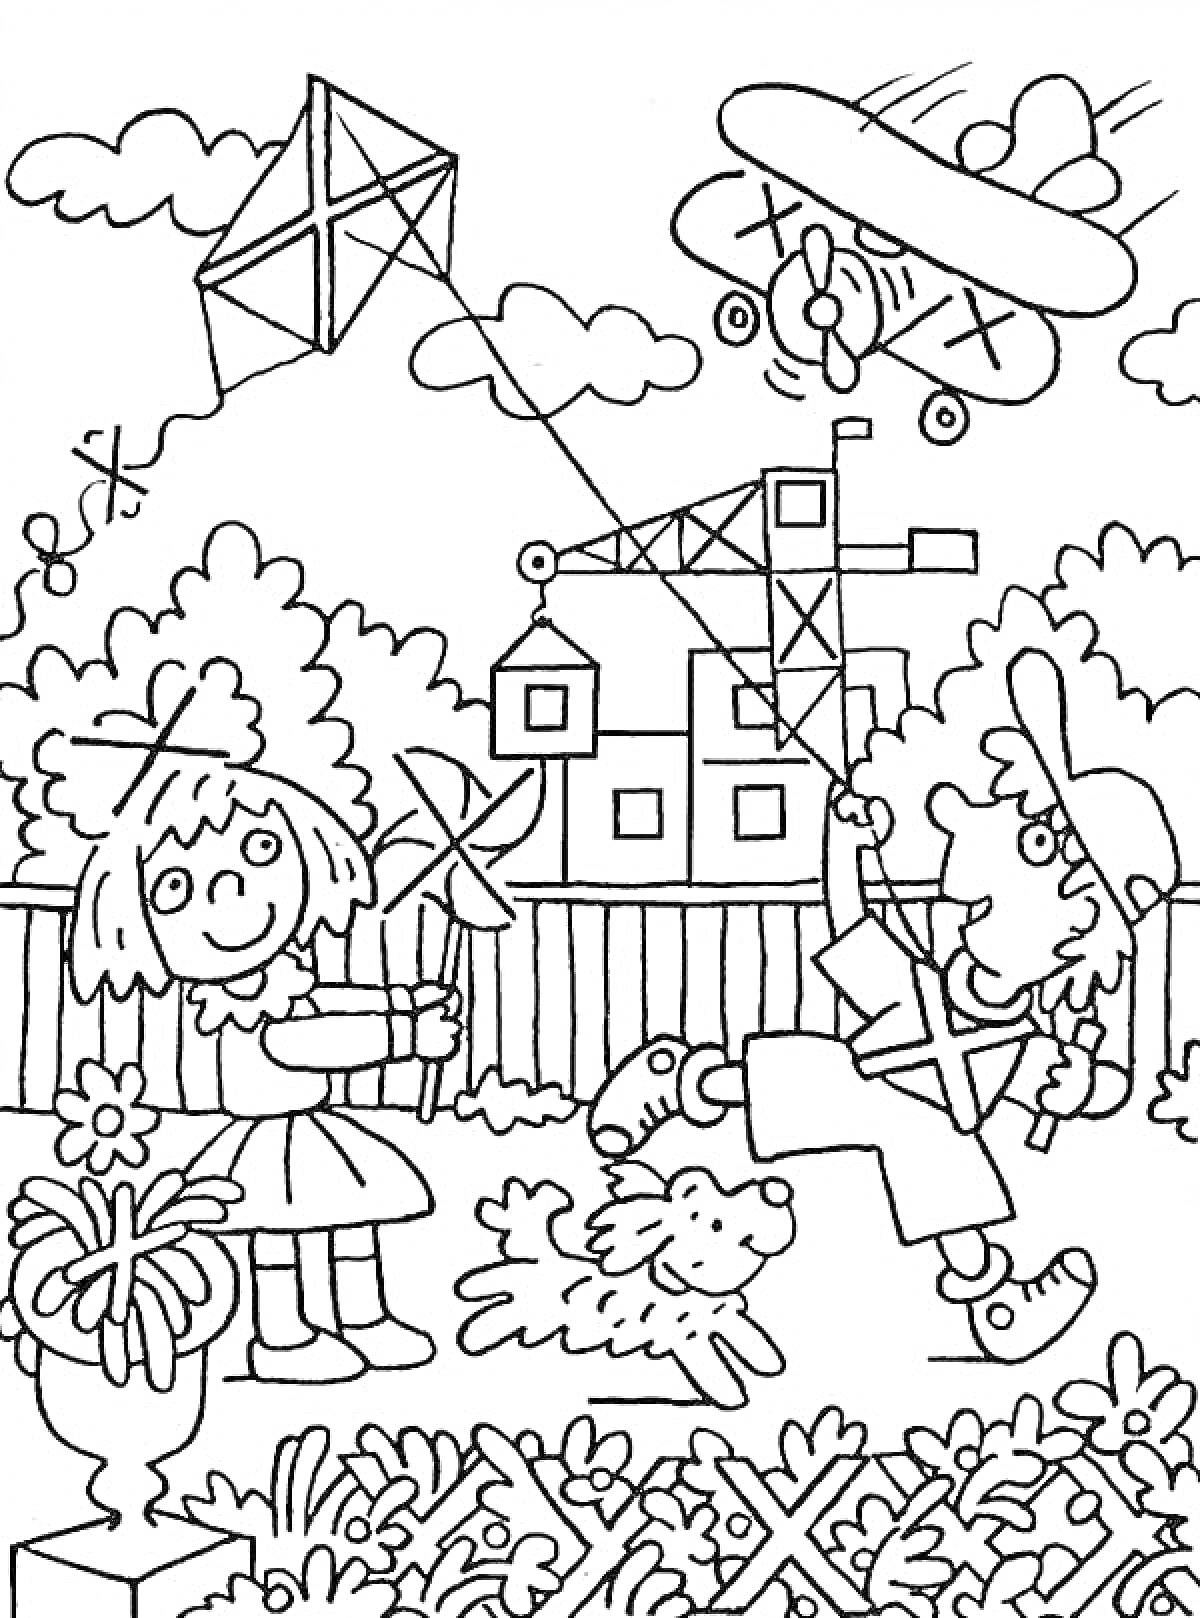 Дети играют на улице с воздушным змеем и самолетом, девочка держит пропеллер, мальчик запускает воздушного змея, рядом собака, вдалеке игрушечный кран и домик, садовые цветы и забор на переднем плане